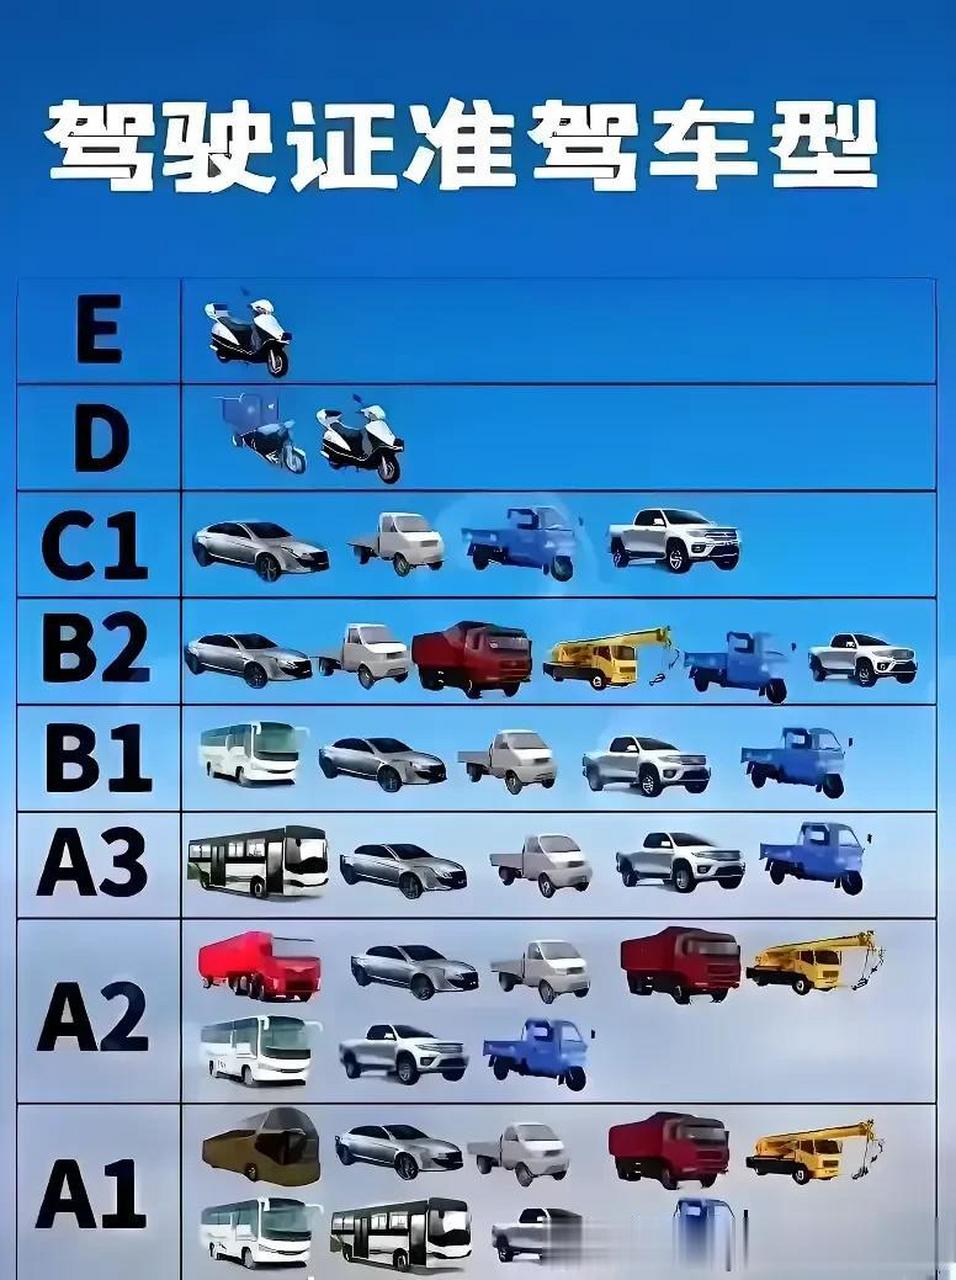 中国驾驶证与准驾车型一览,你的是哪个驾驶证呢?